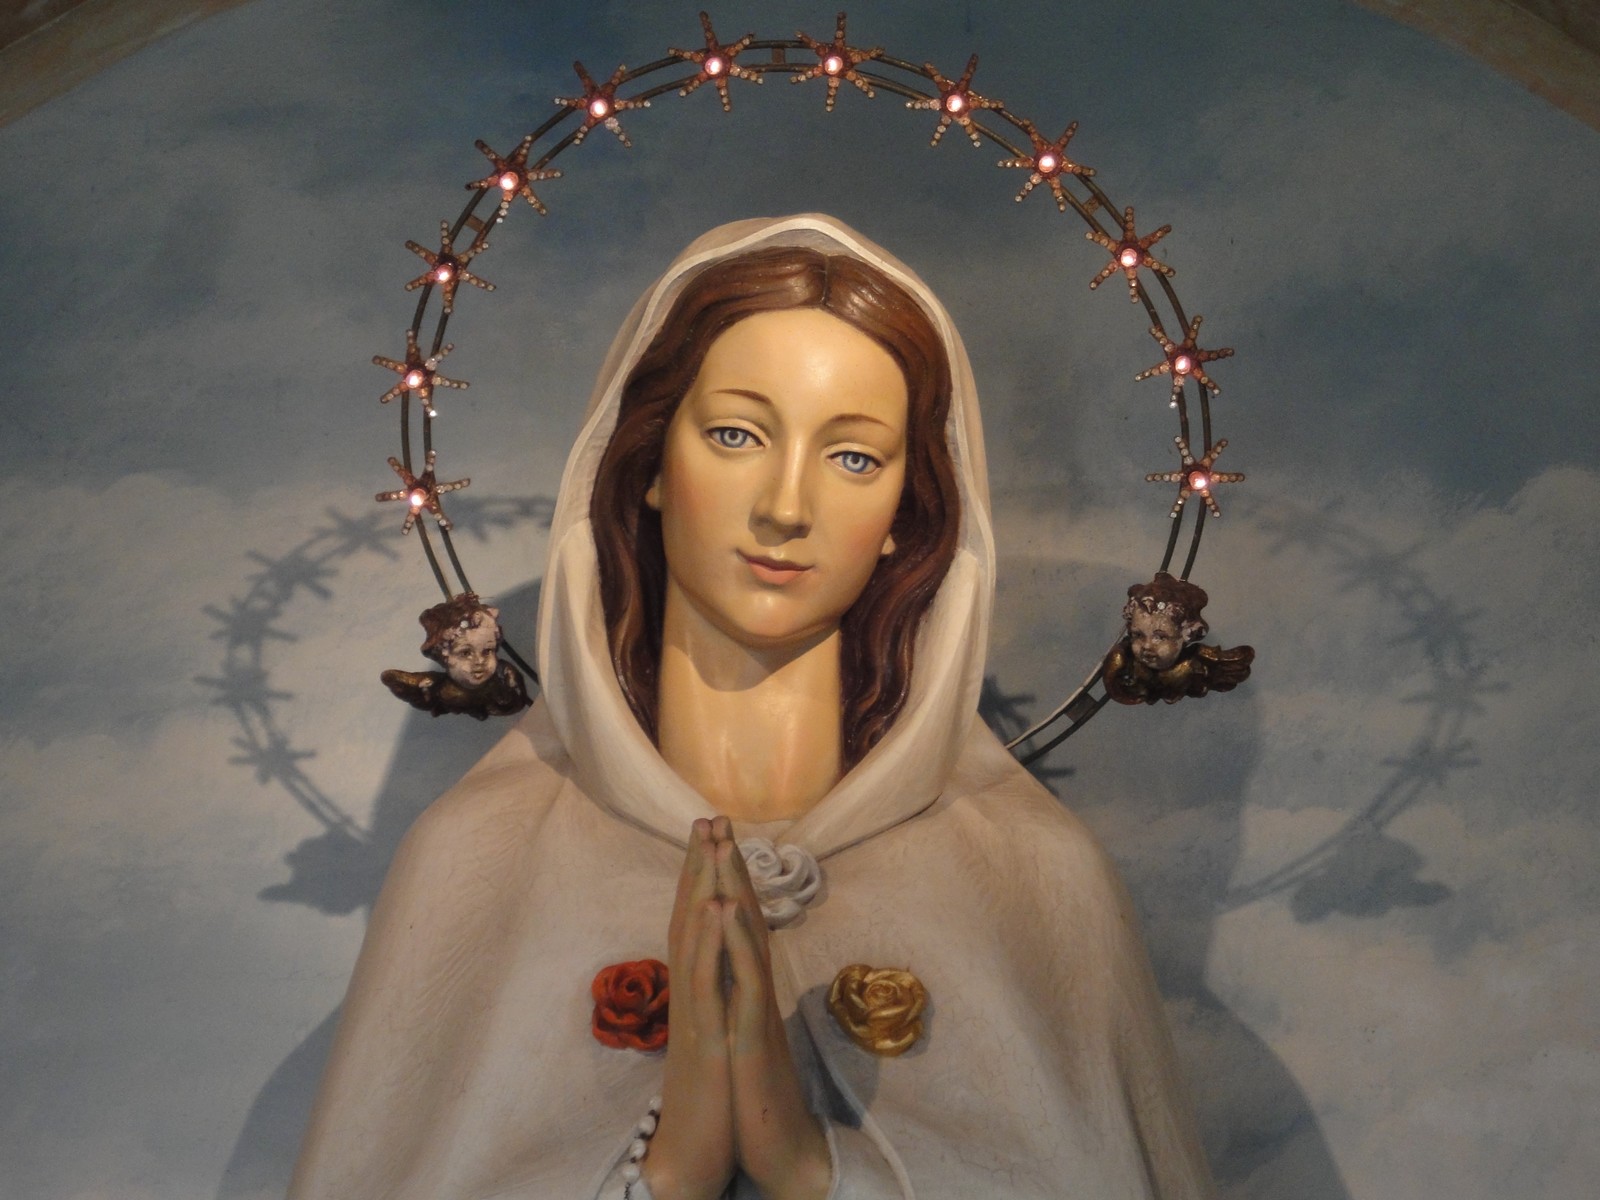 Rosa Mystica de Tver, Imagen de Alemania Llora en Iglesia Ortodoxa, Rusia (22 jul)